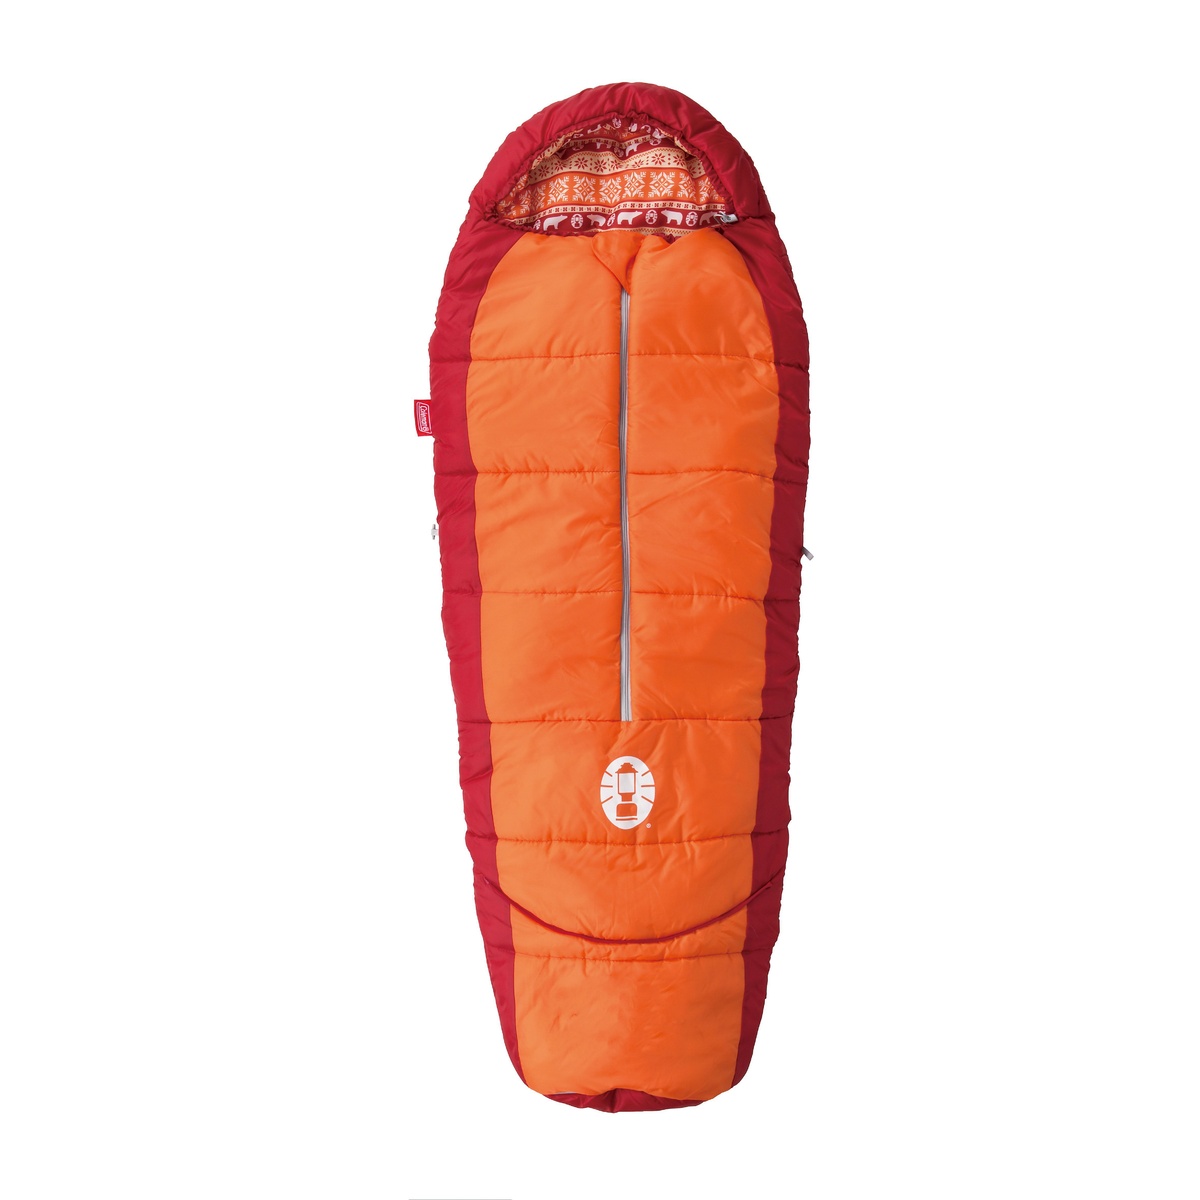 コールマン キャンプ用品 年末年始大決算 寝袋 スリーピングバッグ ジュニア用 キッズマミー 2000027271 アジャスタブル COLEMAN 通常便なら送料無料 C4オレンジ オレンジ